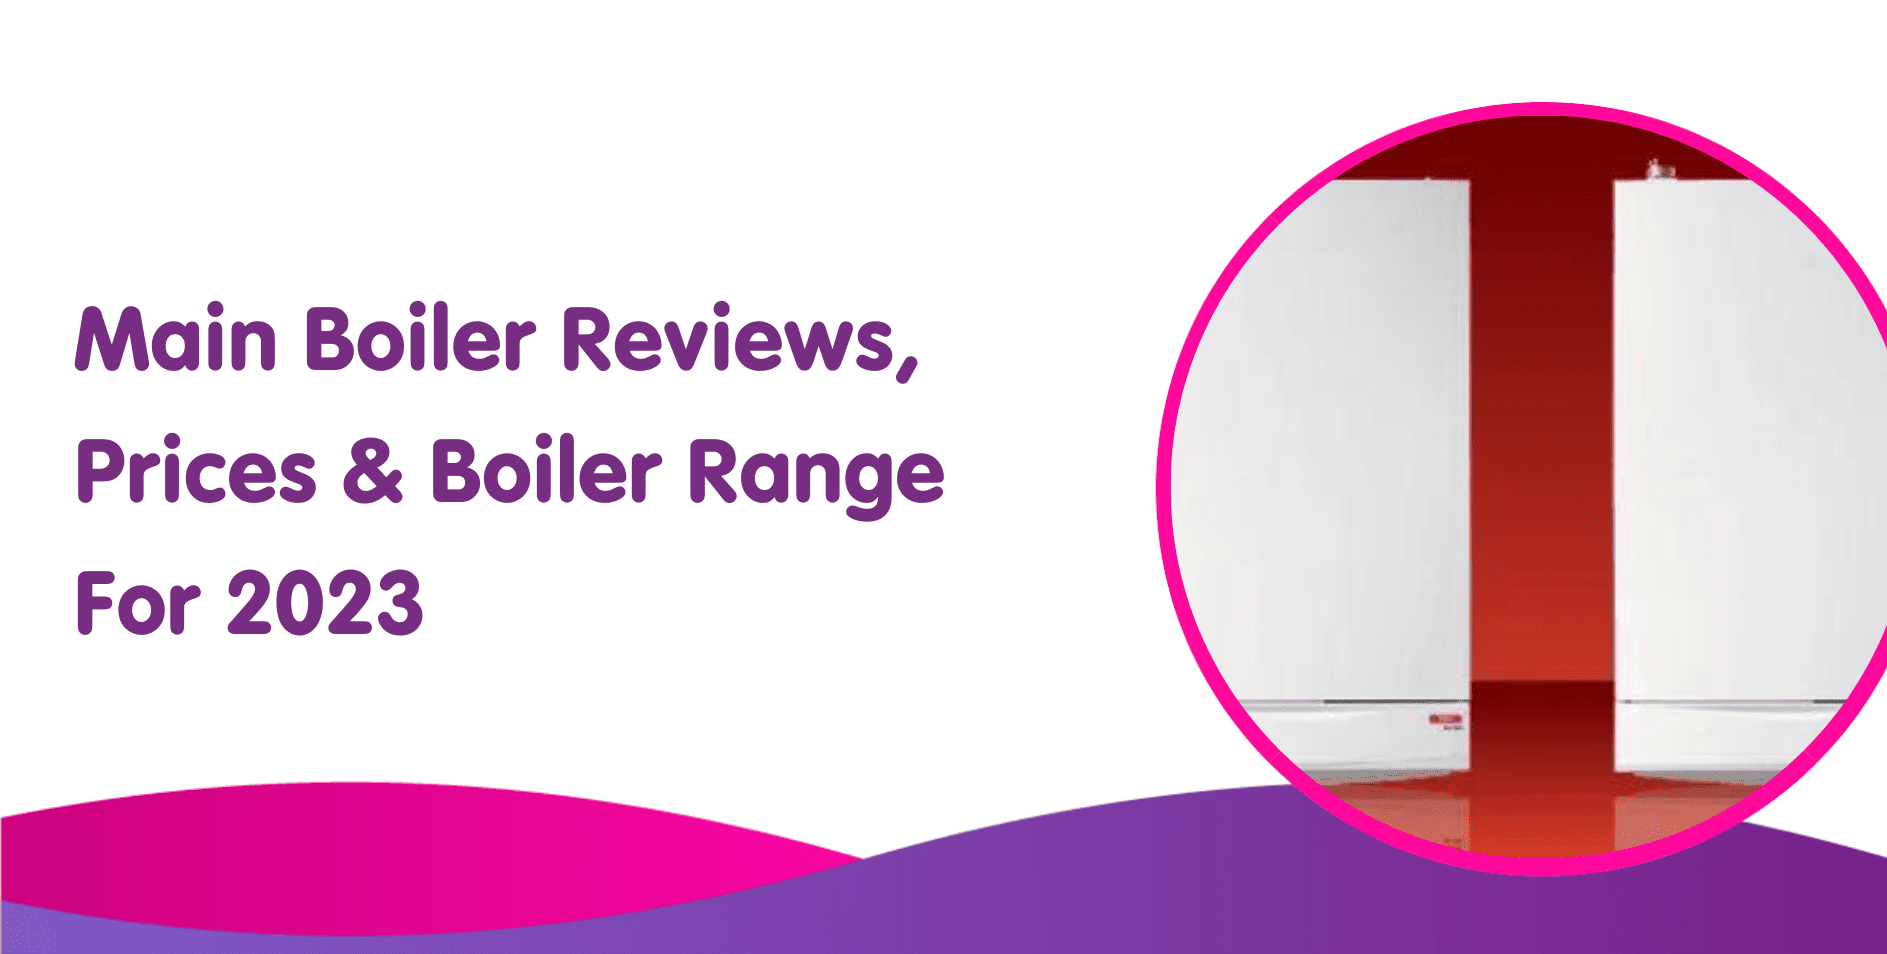 Main Boiler Reviews, Prices & Boiler Range For 2023